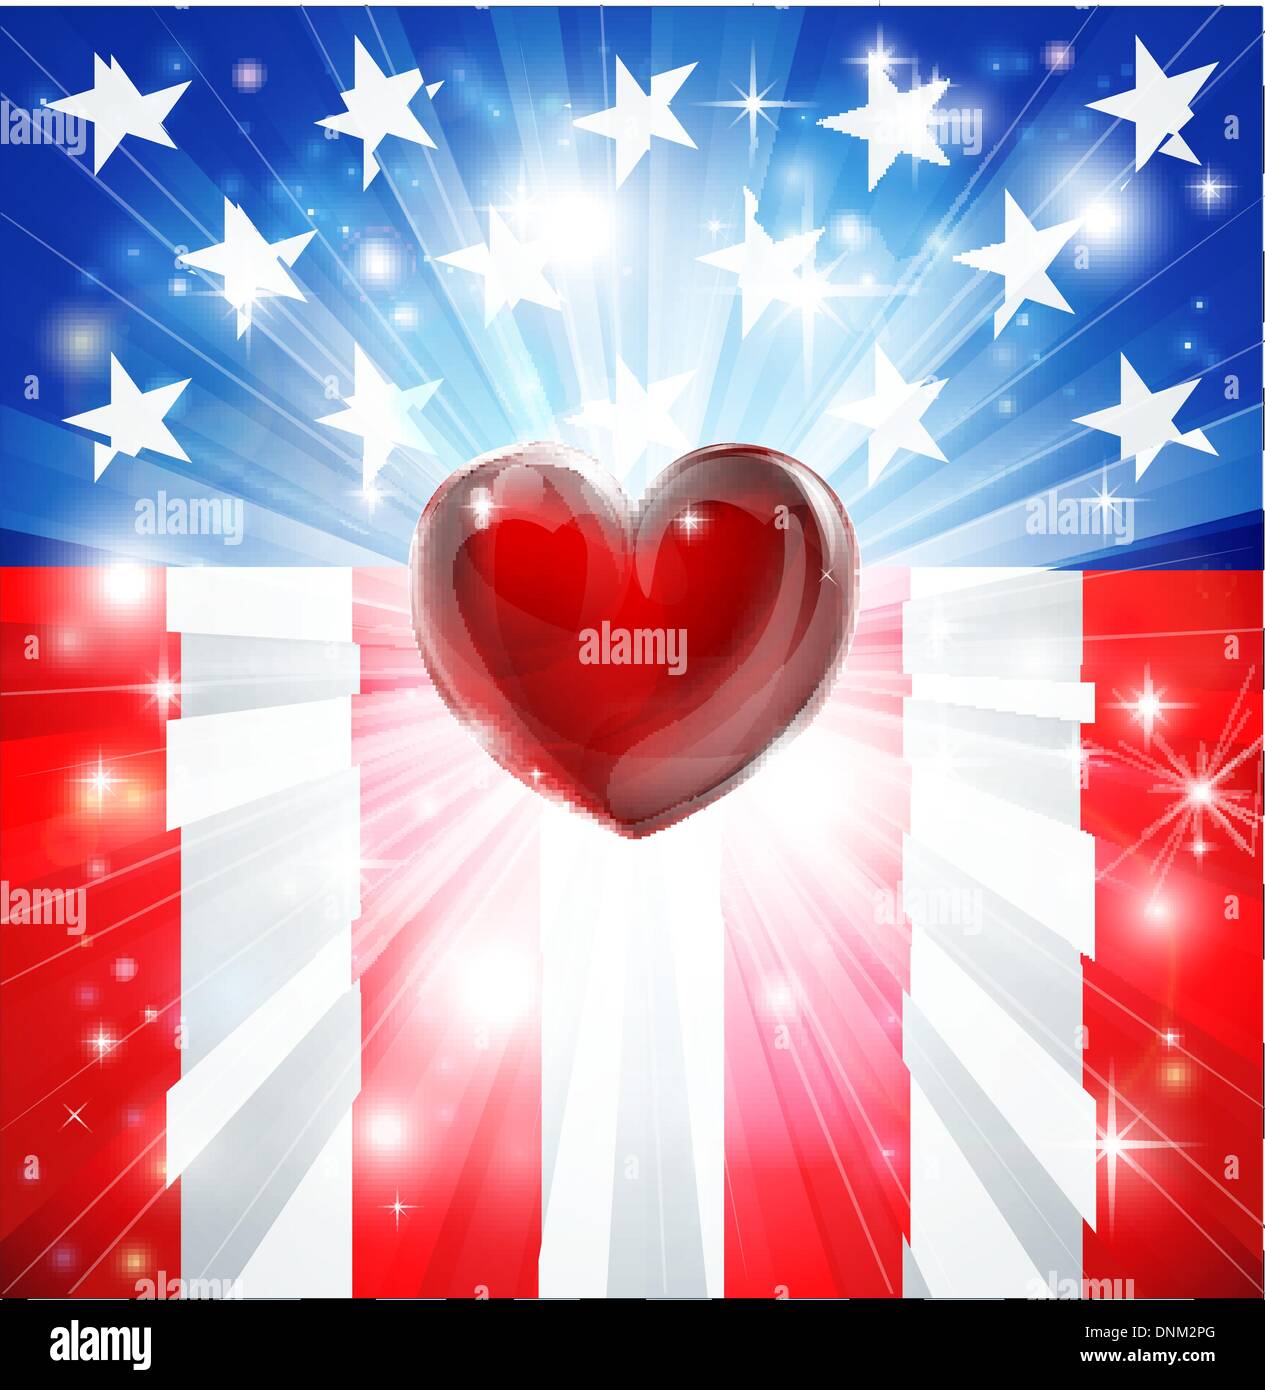 Bandiera americana sfondo patriottico con il cuore, la nozione di amore del paese. Ottimo per il 4 di luglio o temi militari. Illustrazione Vettoriale